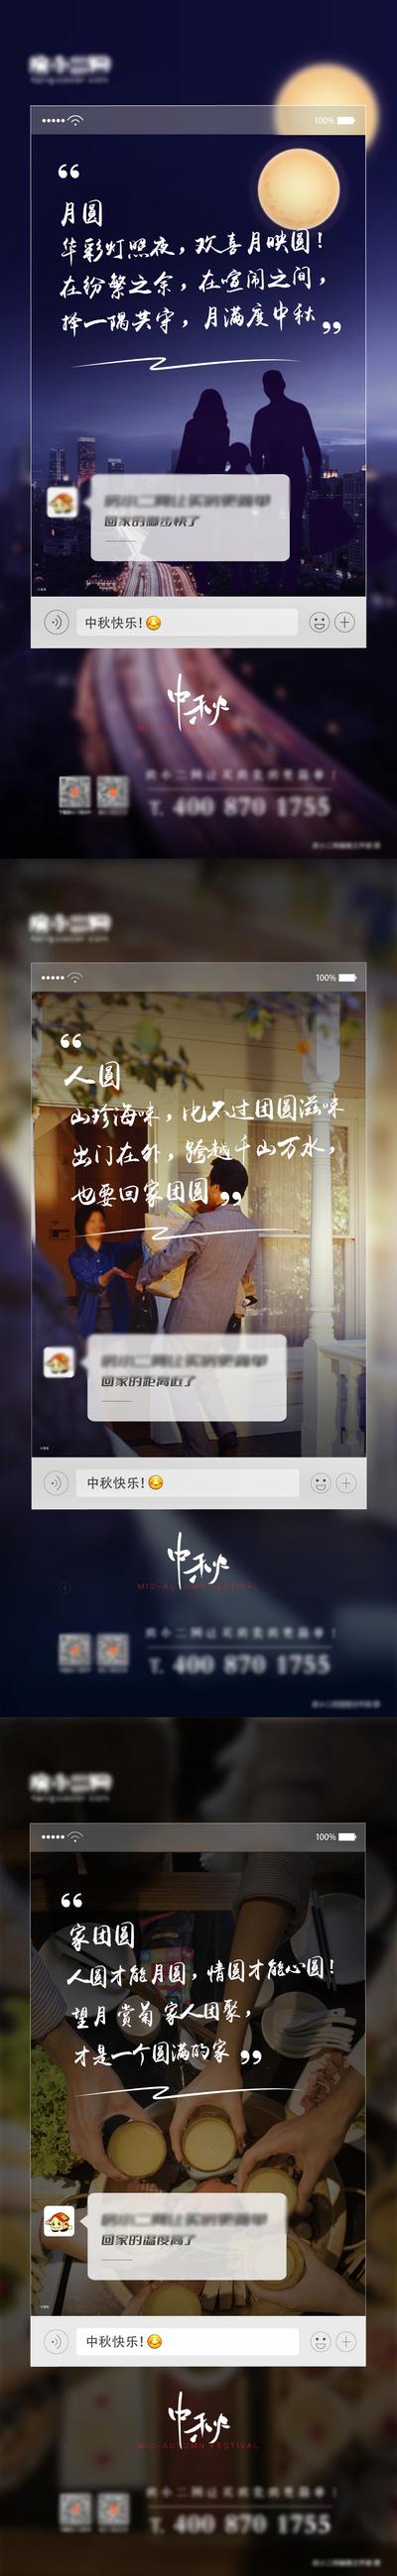 南门网 地产中秋节系列宣传海报